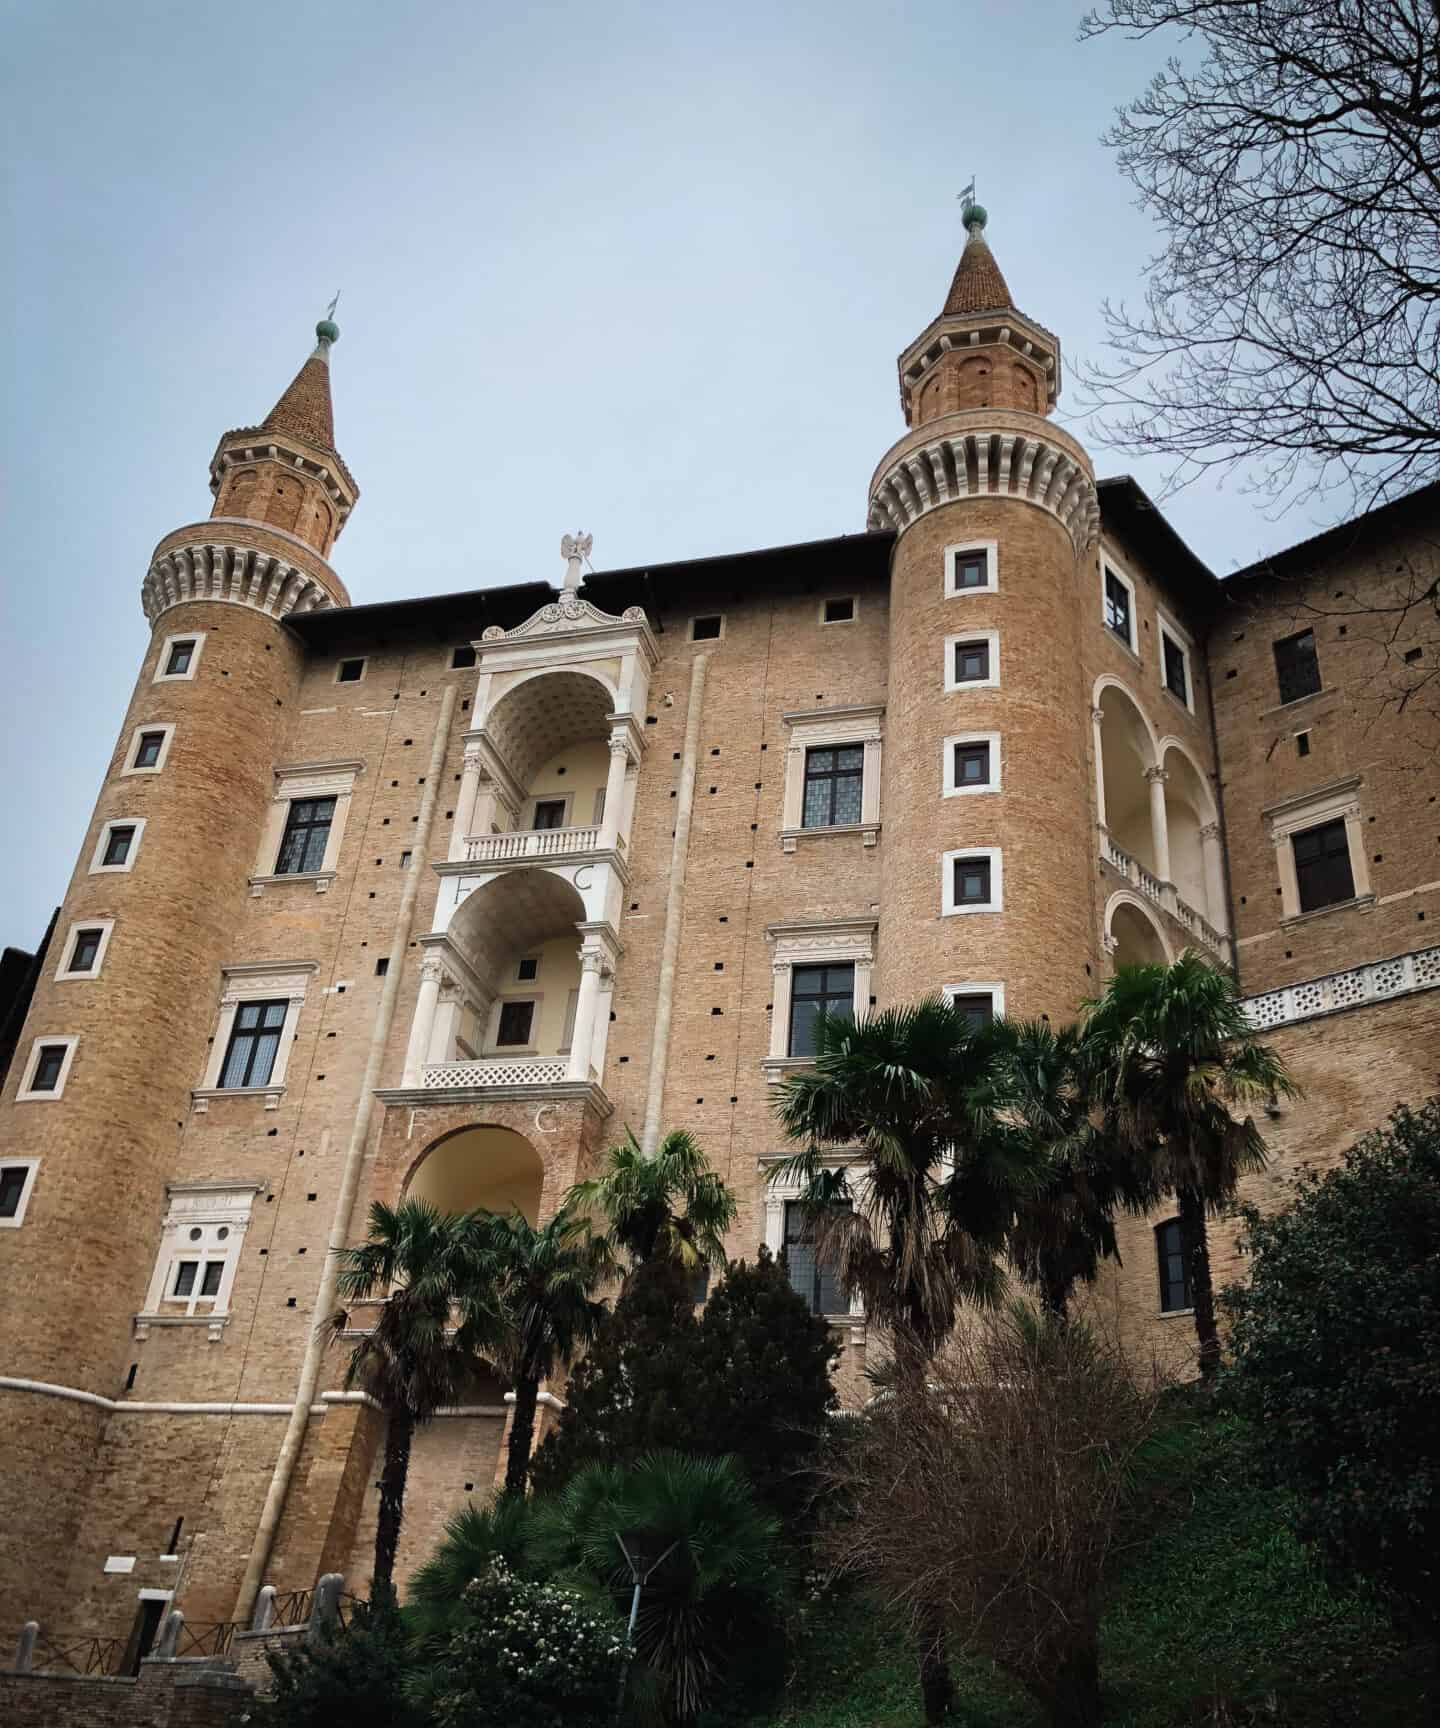 Palazzo ducale sandstone castle in Urbino Italy